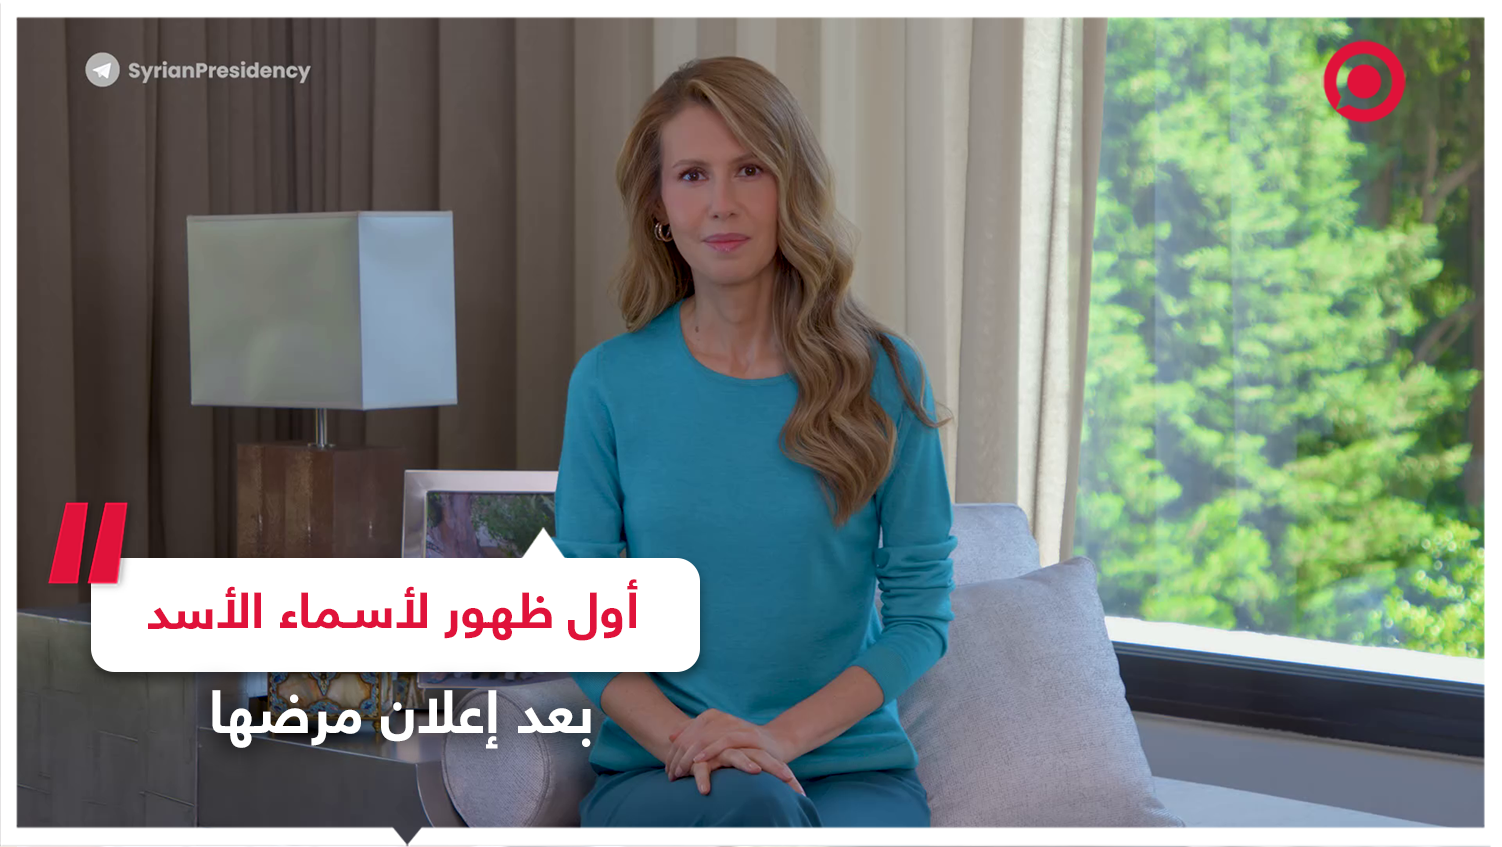 السيدة الأولى السورية أسماء الأسد توجه رسالة قبل بدئها العلاج من مرض الـ "لوكيميا"